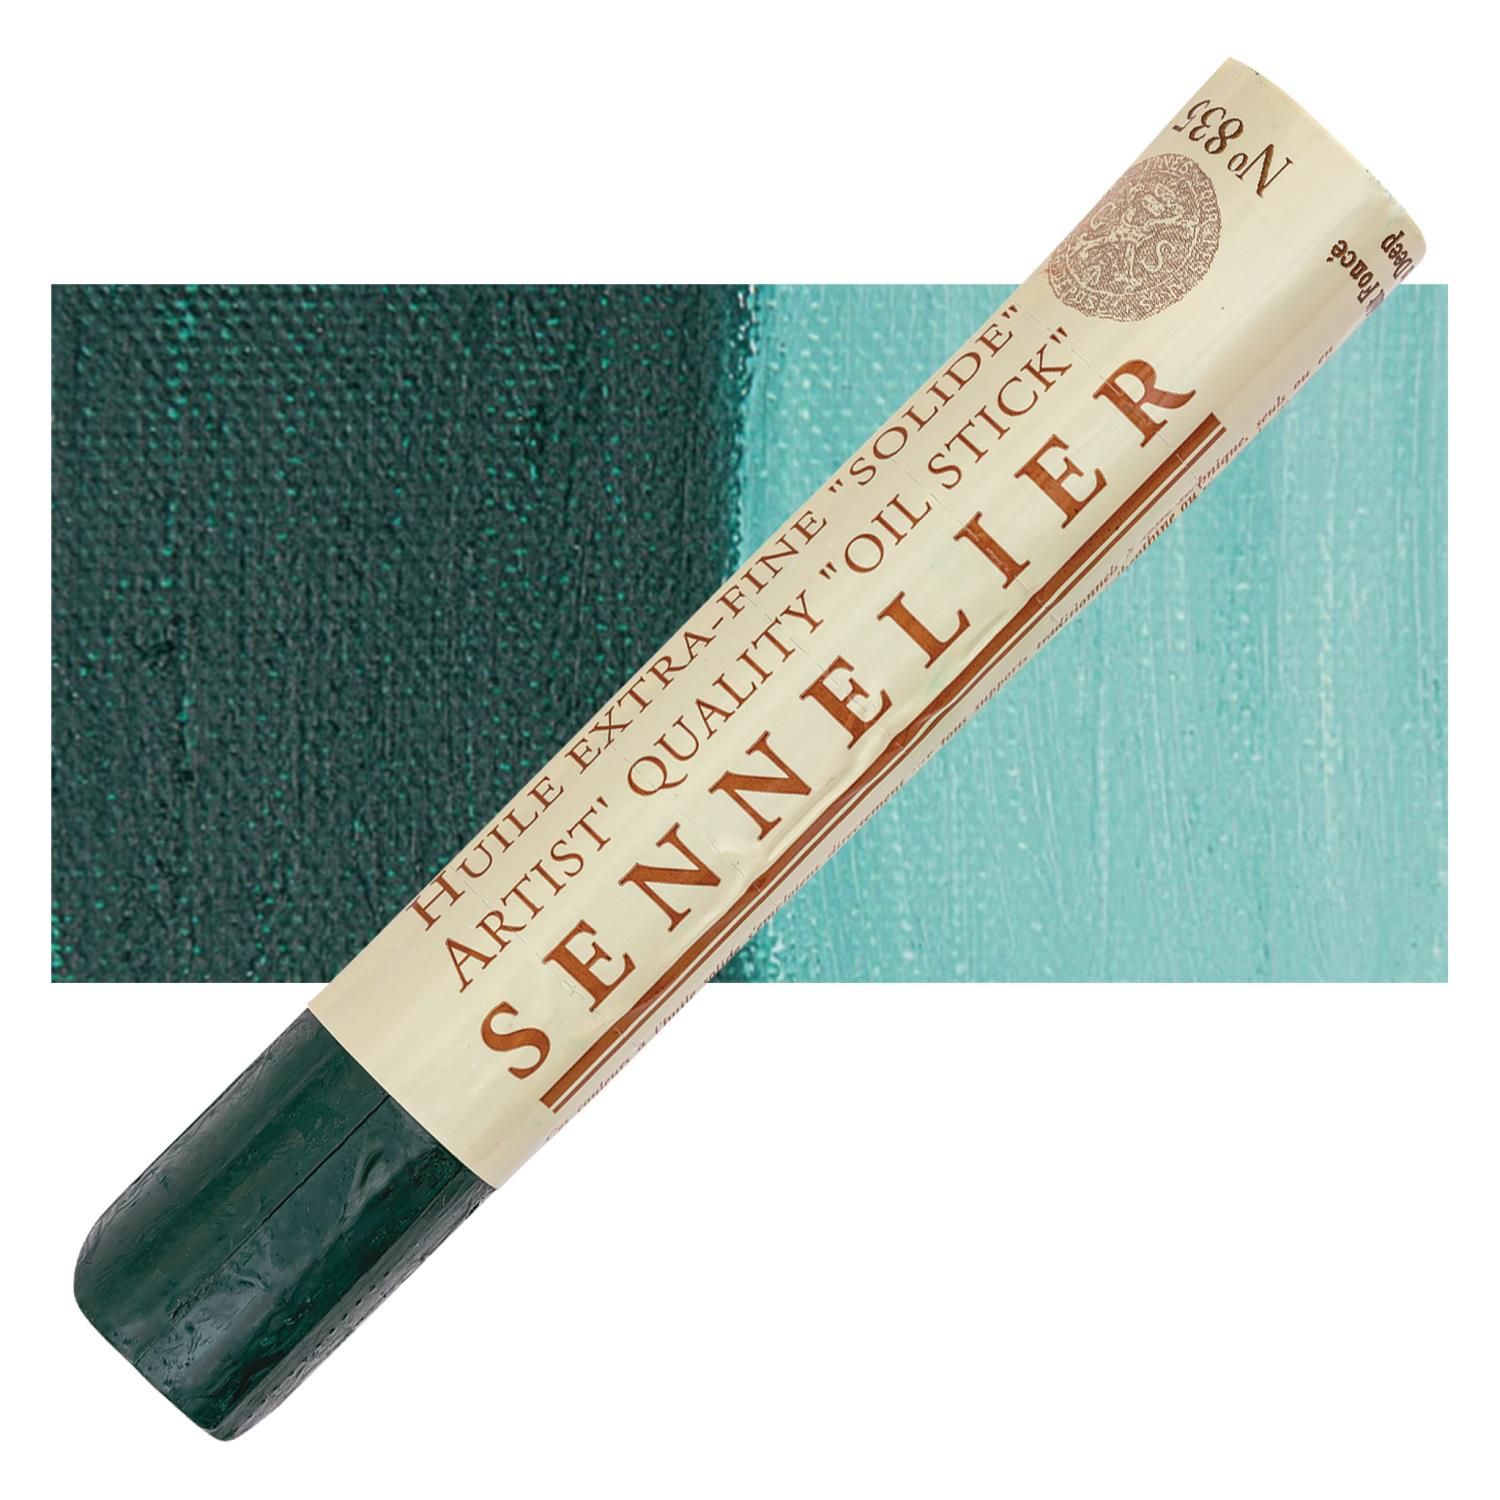 Sennelier Artist Oil Stick 38ml - 835 Cobalt Green Deep S2 utgår